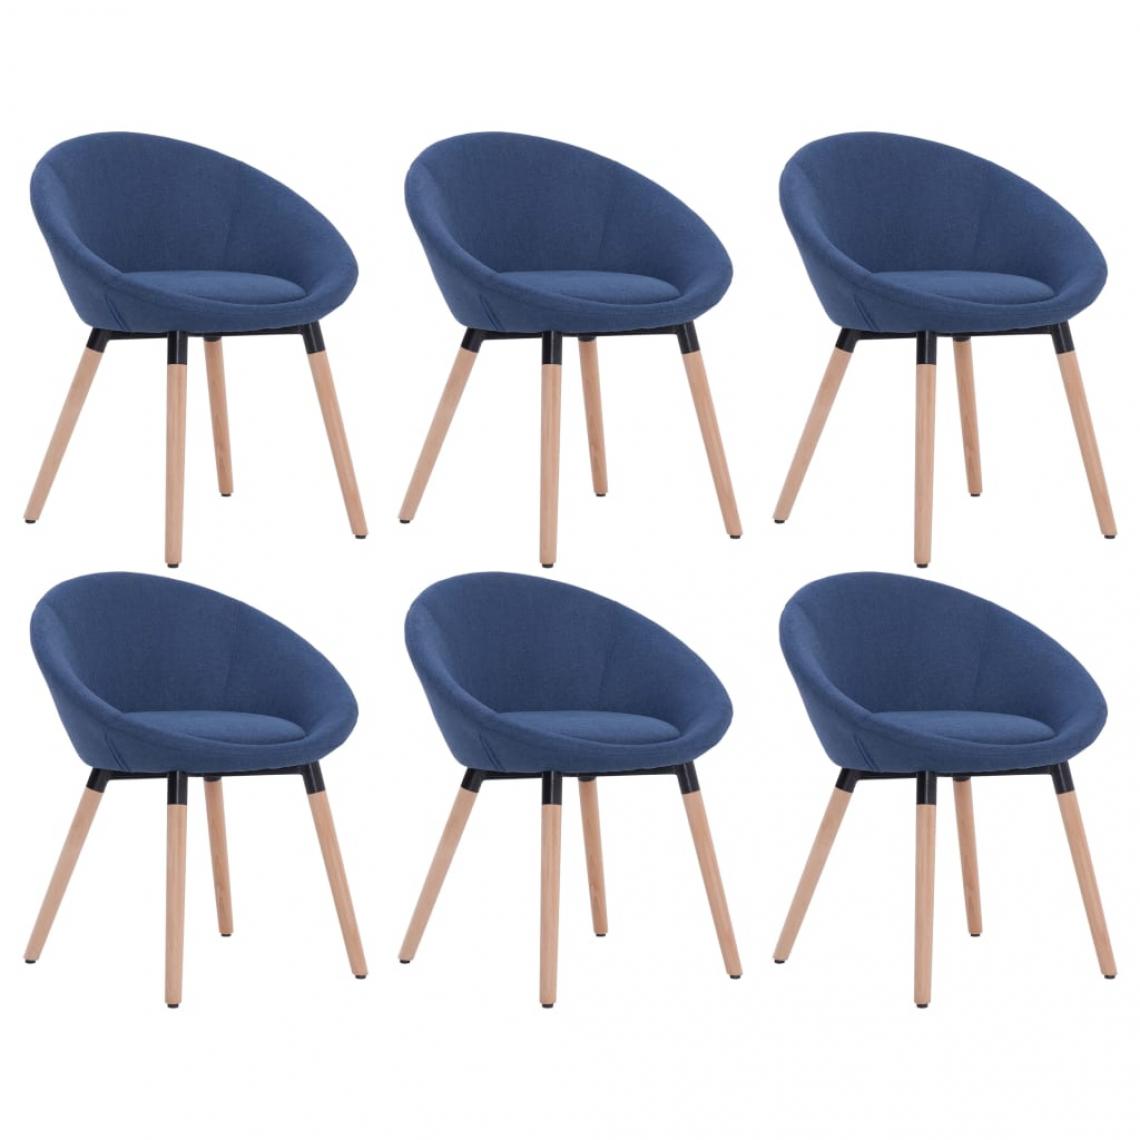 Decoshop26 - Lot de 6 chaises de salle à manger cuisine design contemporain tissu bleu CDS022206 - Chaises